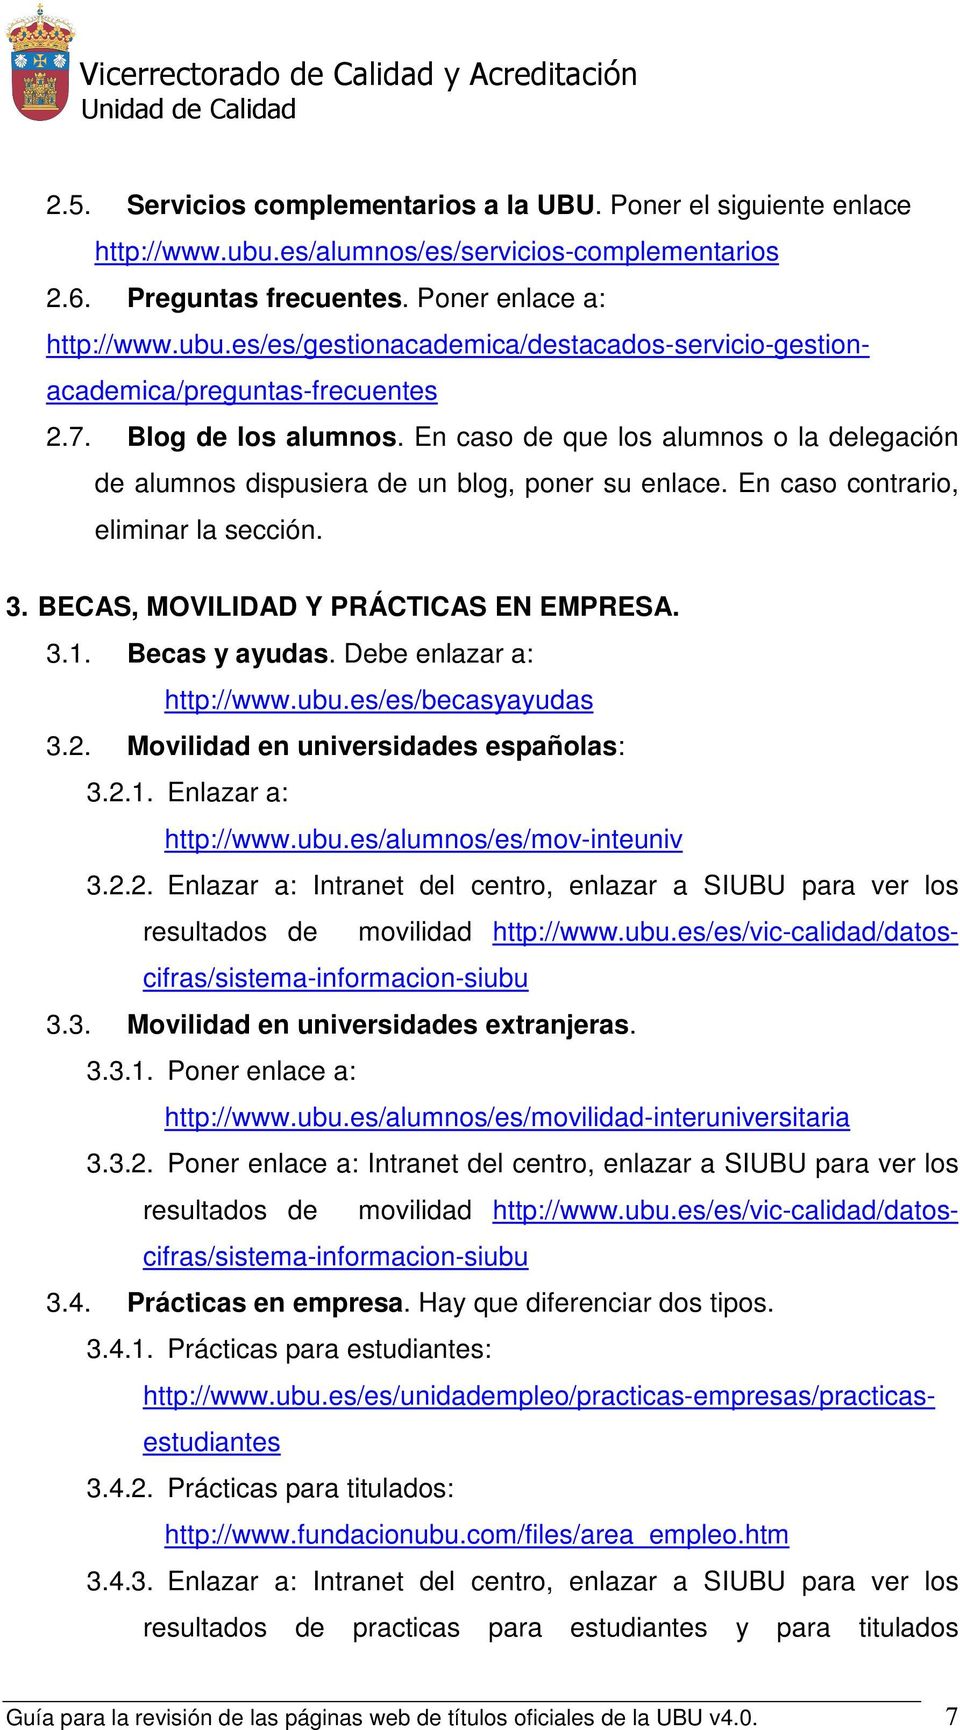 BECAS, MOVILIDAD Y PRÁCTICAS EN EMPRESA. 3.1. Becas y ayudas. Debe enlazar a: http://www.ubu.es/es/becasyayudas 3.2. Movilidad en universidades españolas: 3.2.1. Enlazar a: http://www.ubu.es/alumnos/es/mov-inteuniv 3.